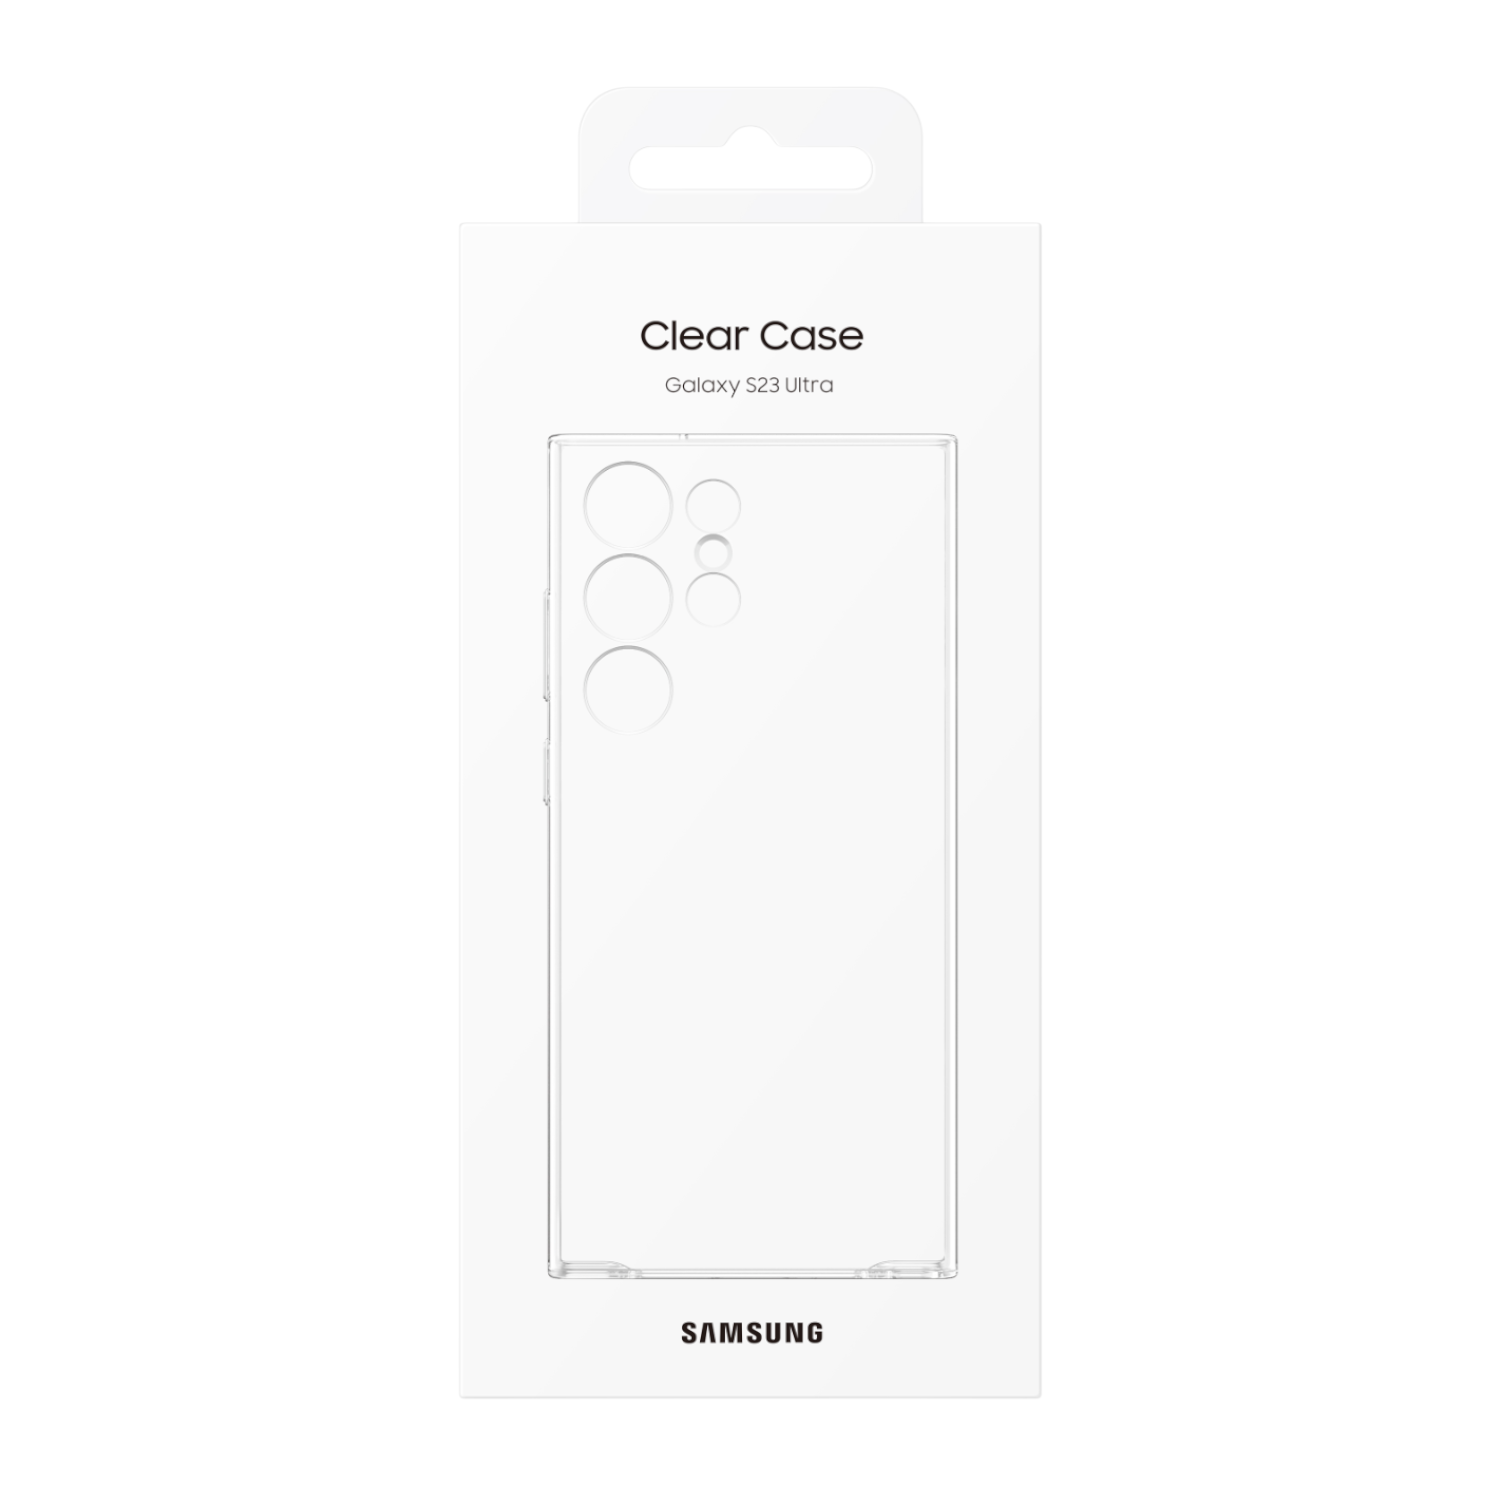 Clear Case Oficial Galaxy S23 Ultra  La funda trasparente de Samsung !! 